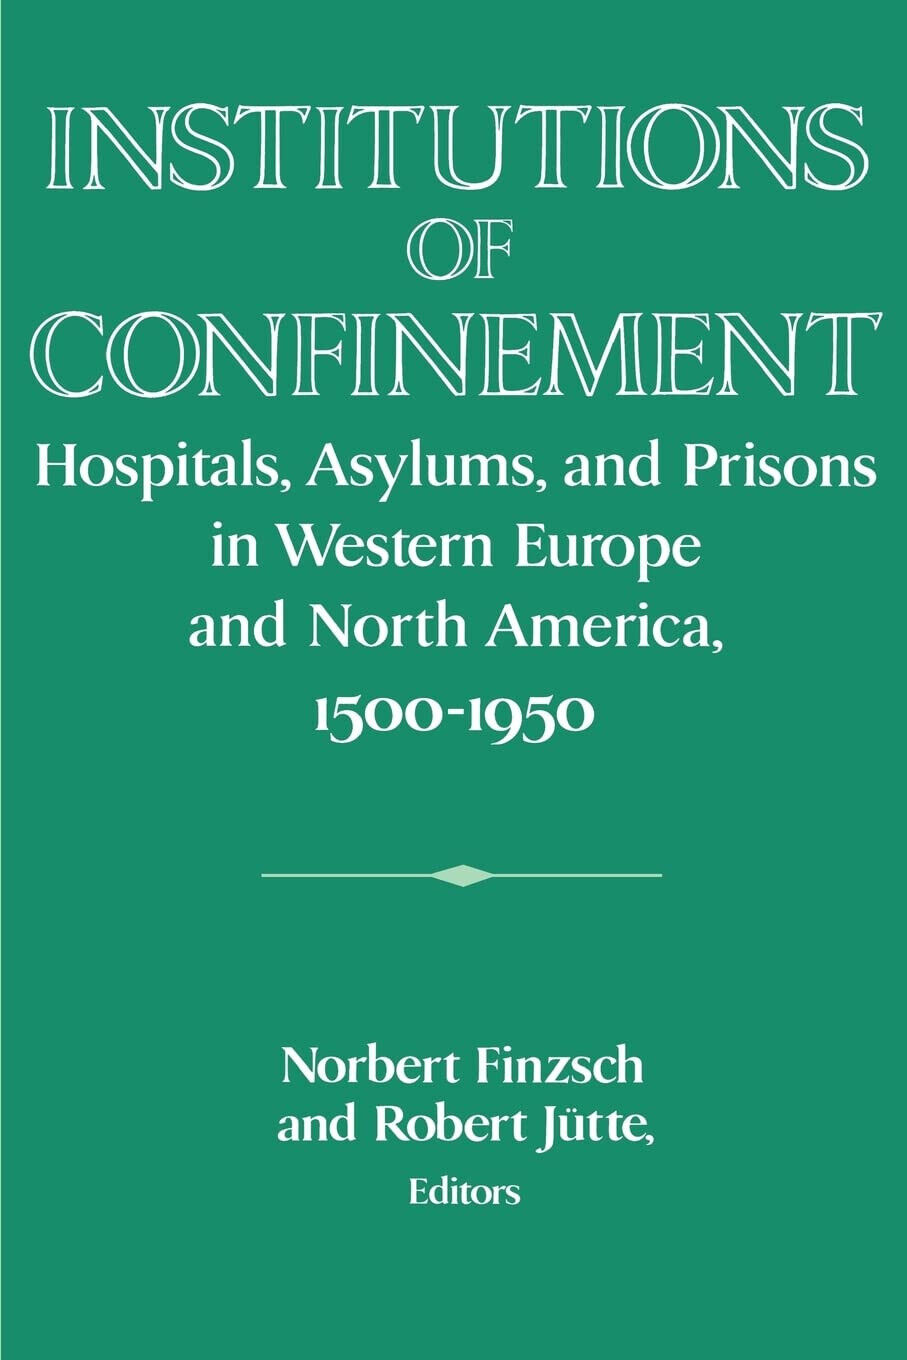 Institutions of Confinement - Norbert Finzsch - Cambridge, 2010